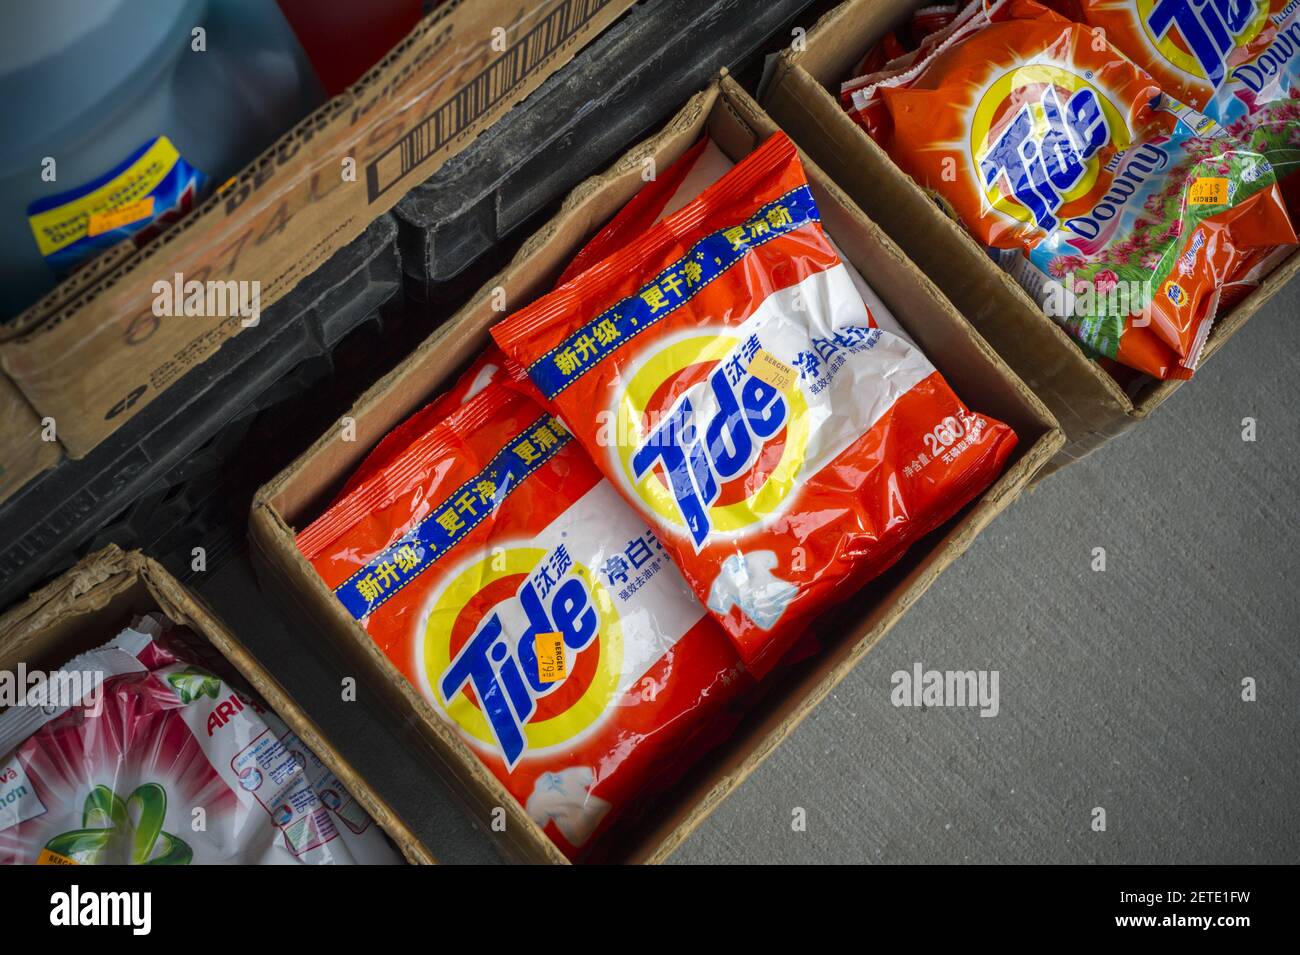 Paquetes de detergente de Tide Procter & Gamble en inglés y chino en el  barrio Melrose del Bronx en Nueva York Domingo, 5 de febrero de 2017. Tide  es el detergente más